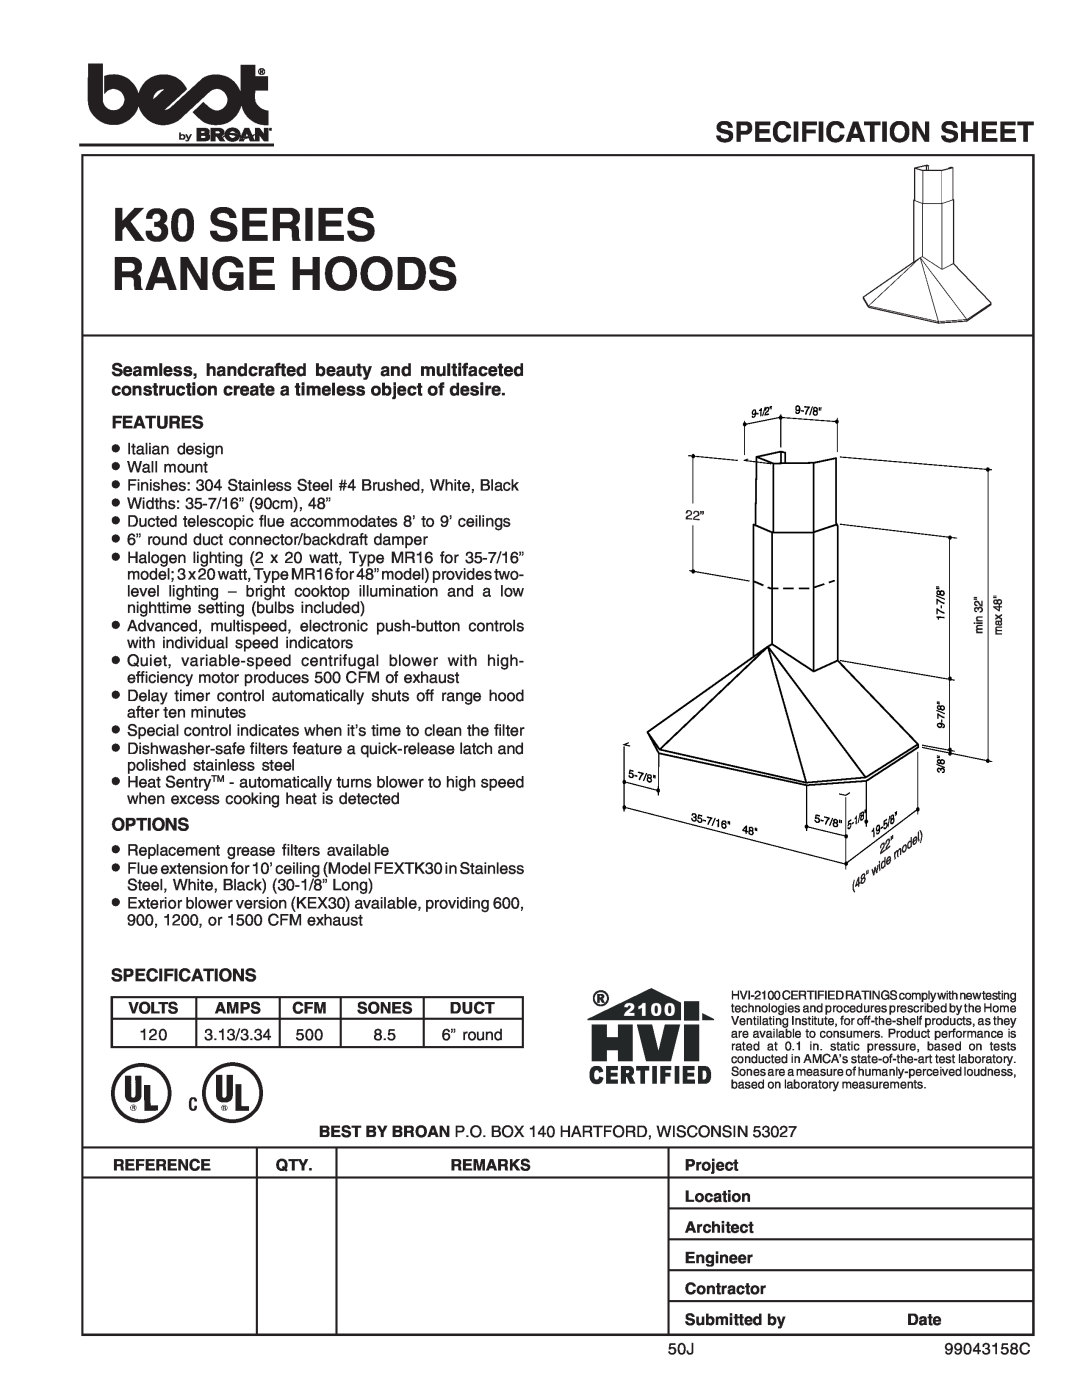 Best K30 Series specifications K30 SERIES RANGE HOODS, Specification Sheet, Features, Options, Specifications 